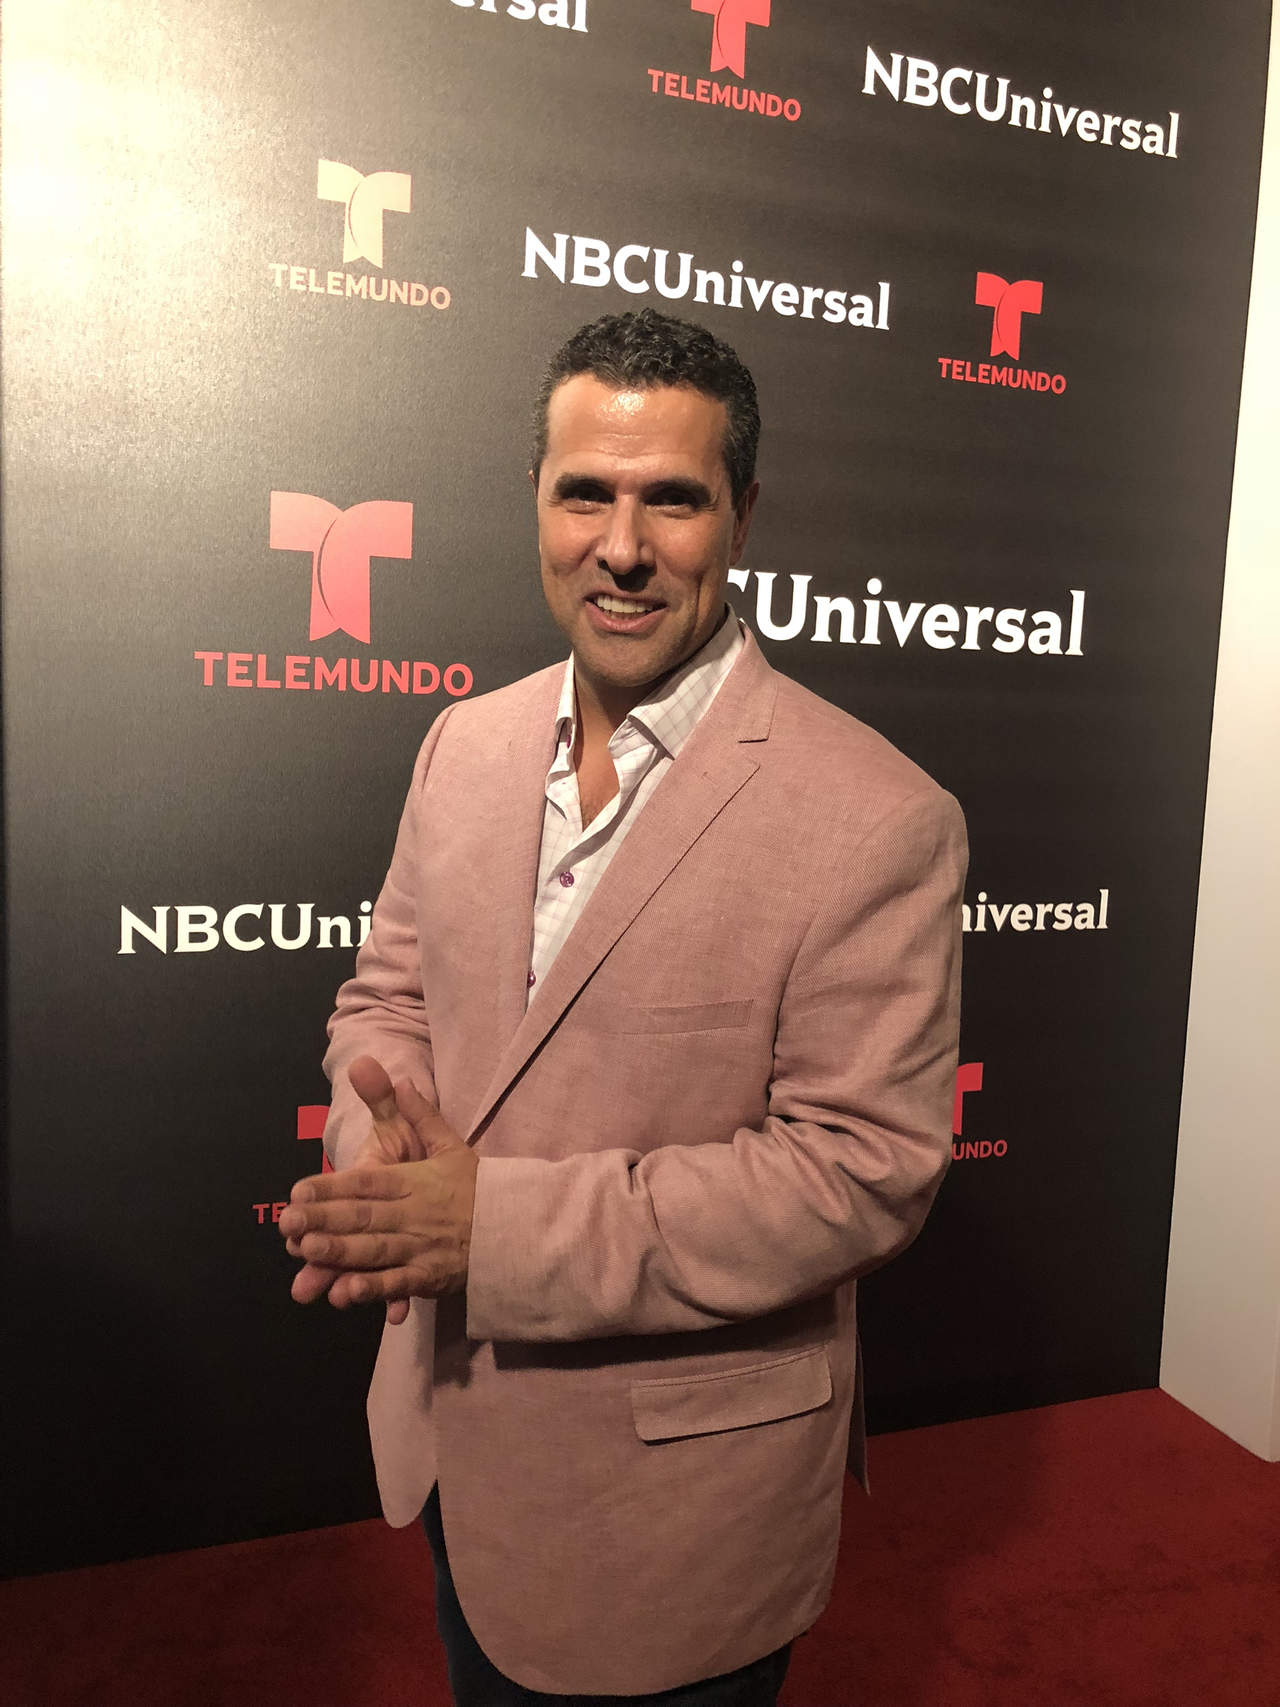 El presentador mexicano recibirá en Miami el premio Estrella Digital (ED) que se otorga a personajes que están causando un impacto positivo en sus diversas áreas. (ARCHIVO)